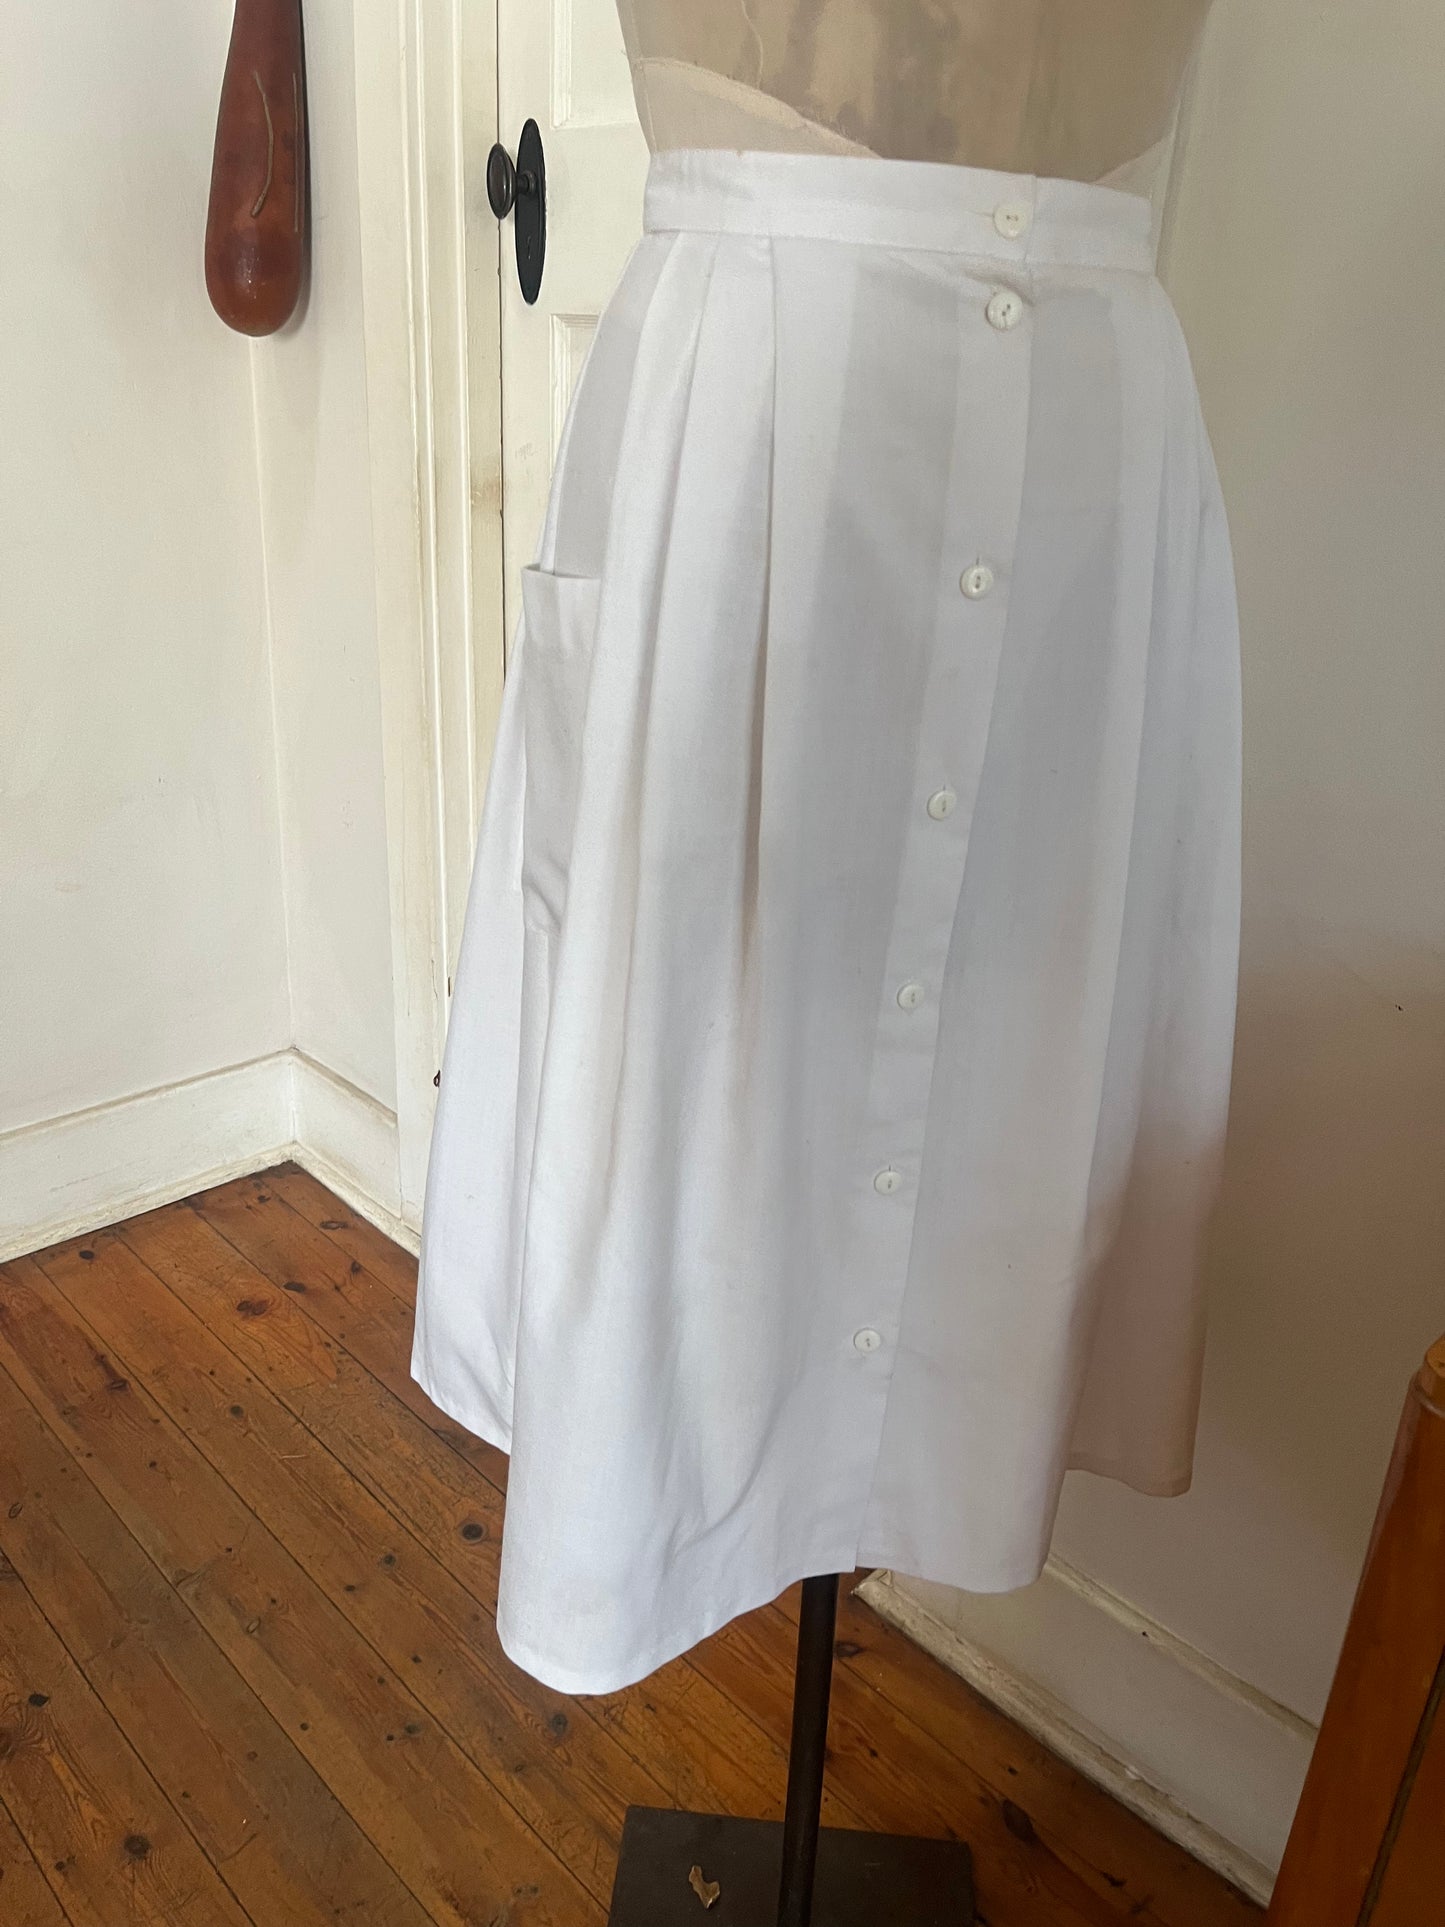 Pleated White Vintage Skirt